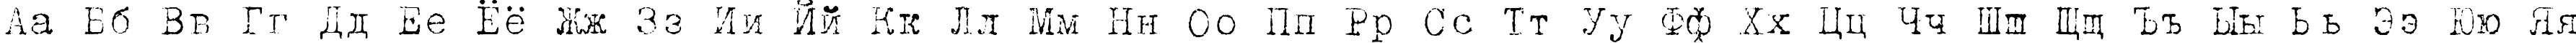 Пример написания русского алфавита шрифтом TrixieCyr-Light